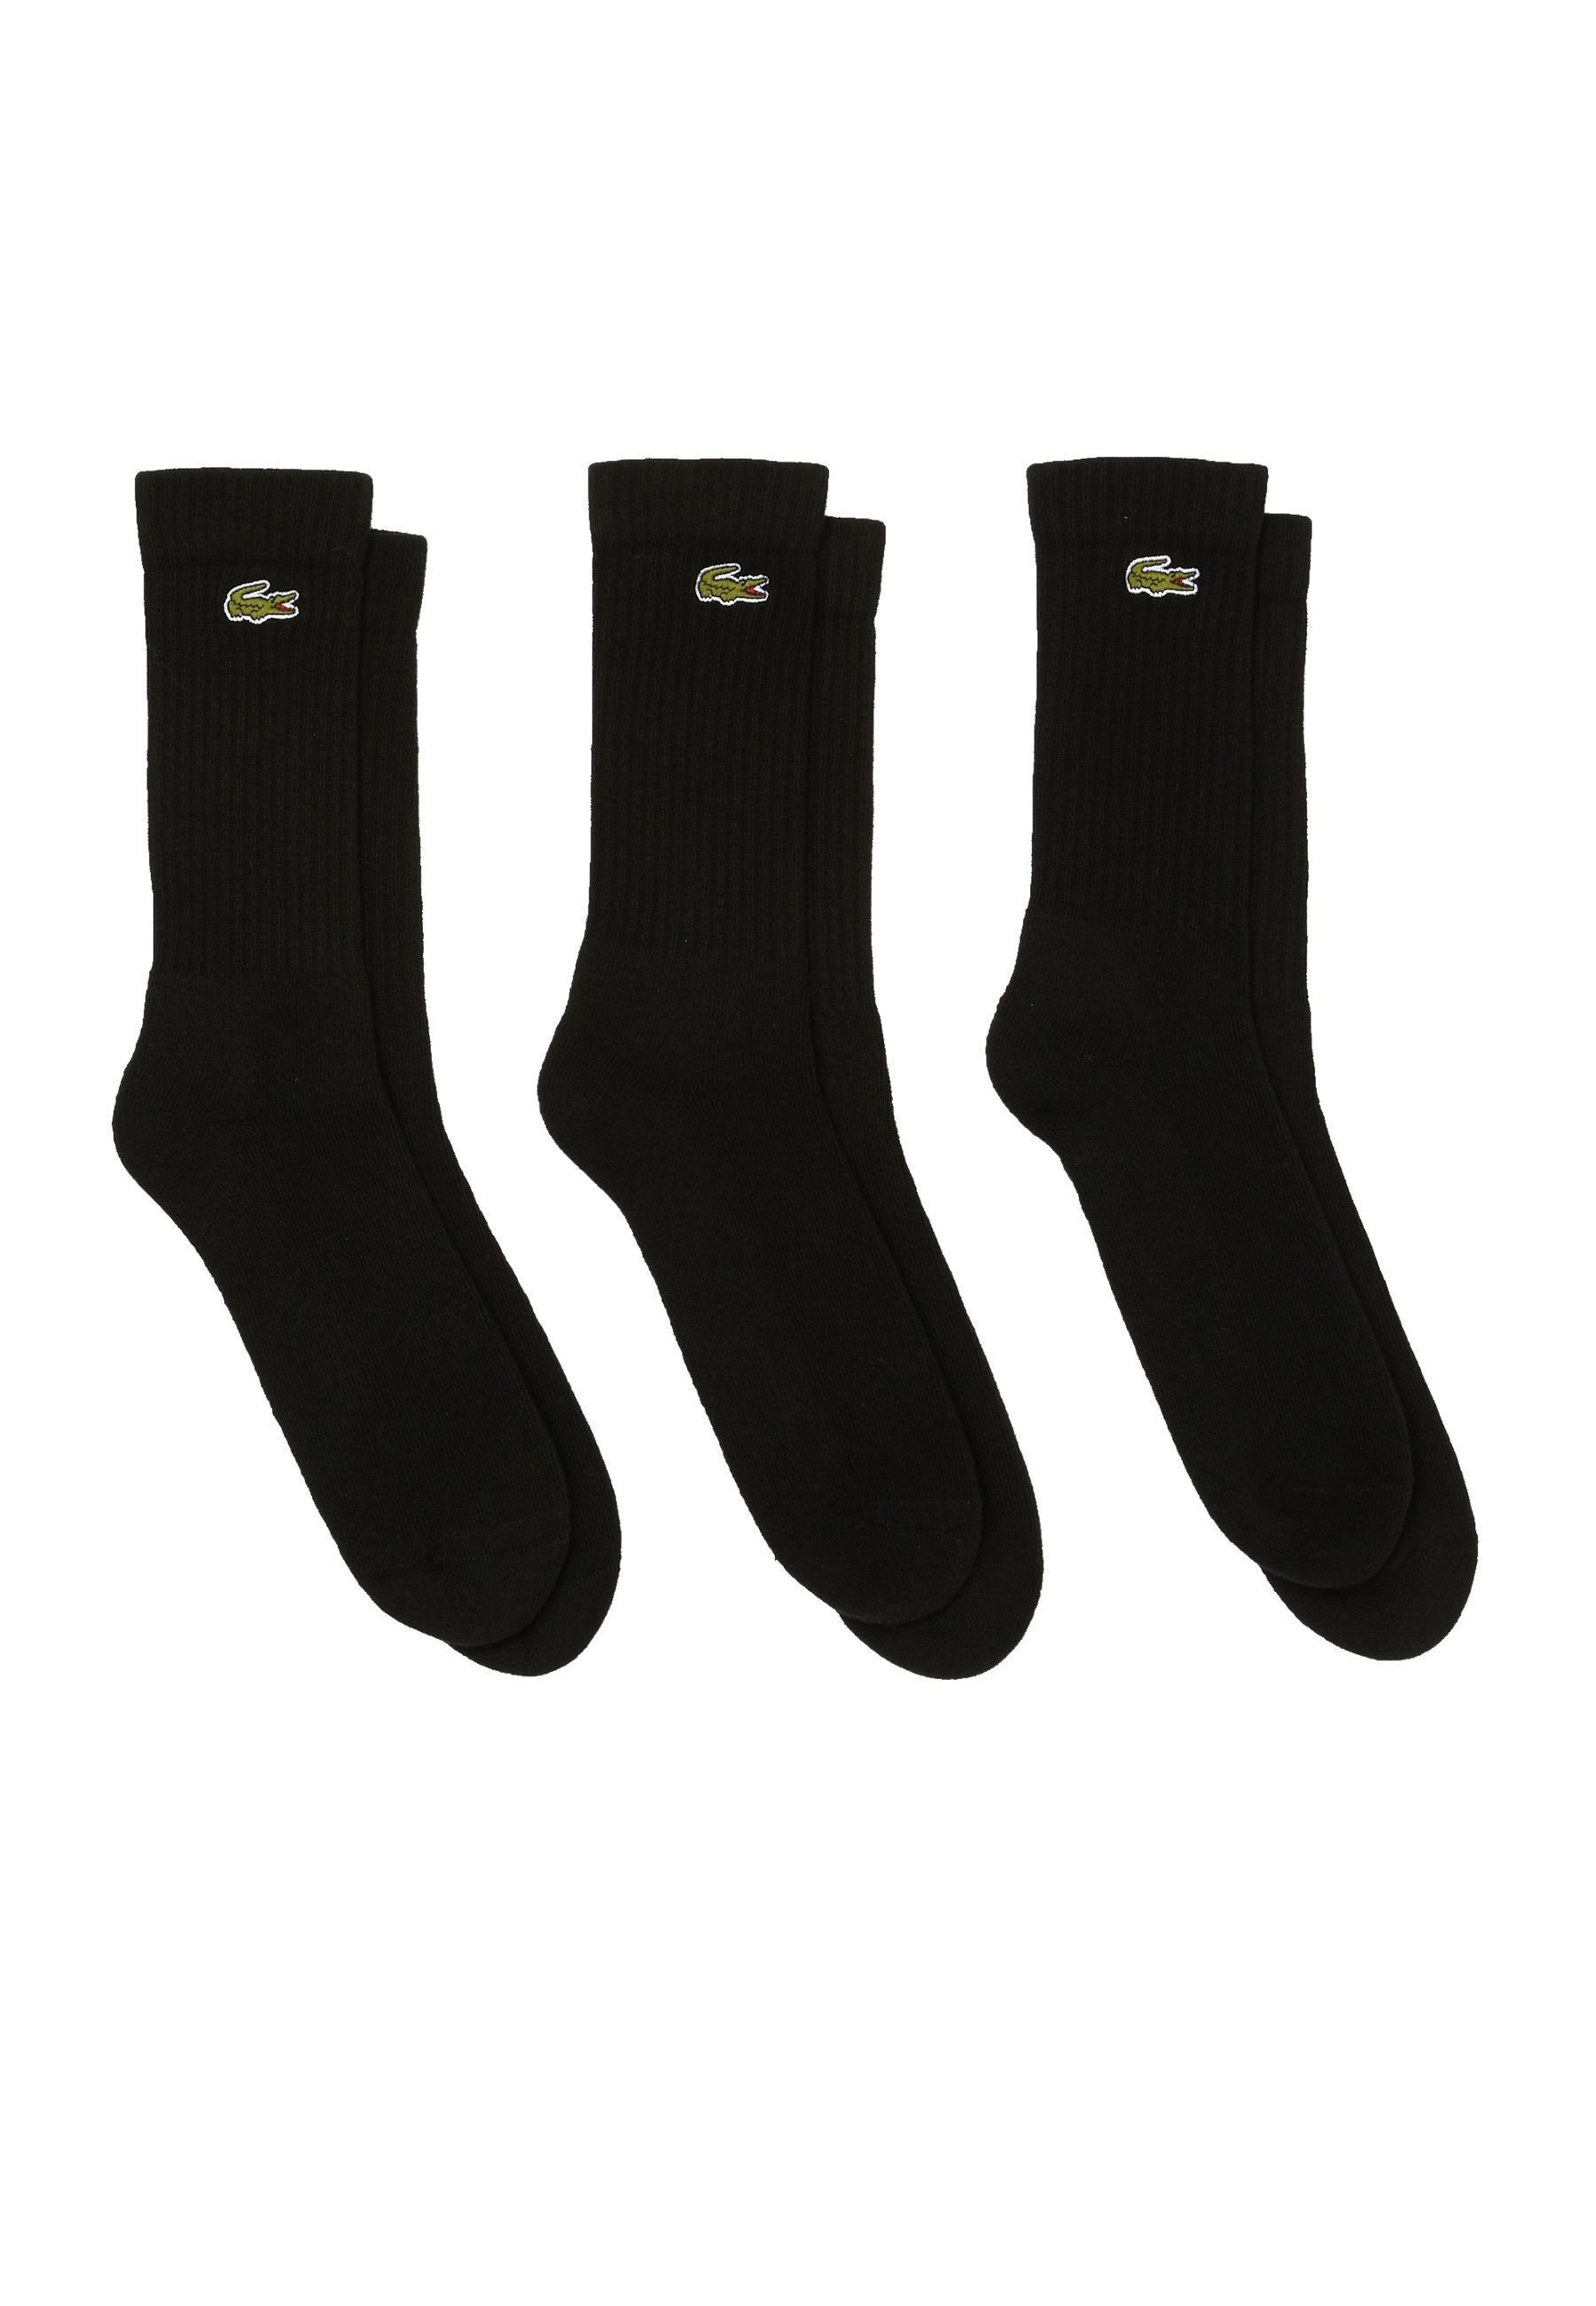 Lacoste Socken Socken Permanent Offer (3-Paar) Dreierpack Socken hohe schwarz